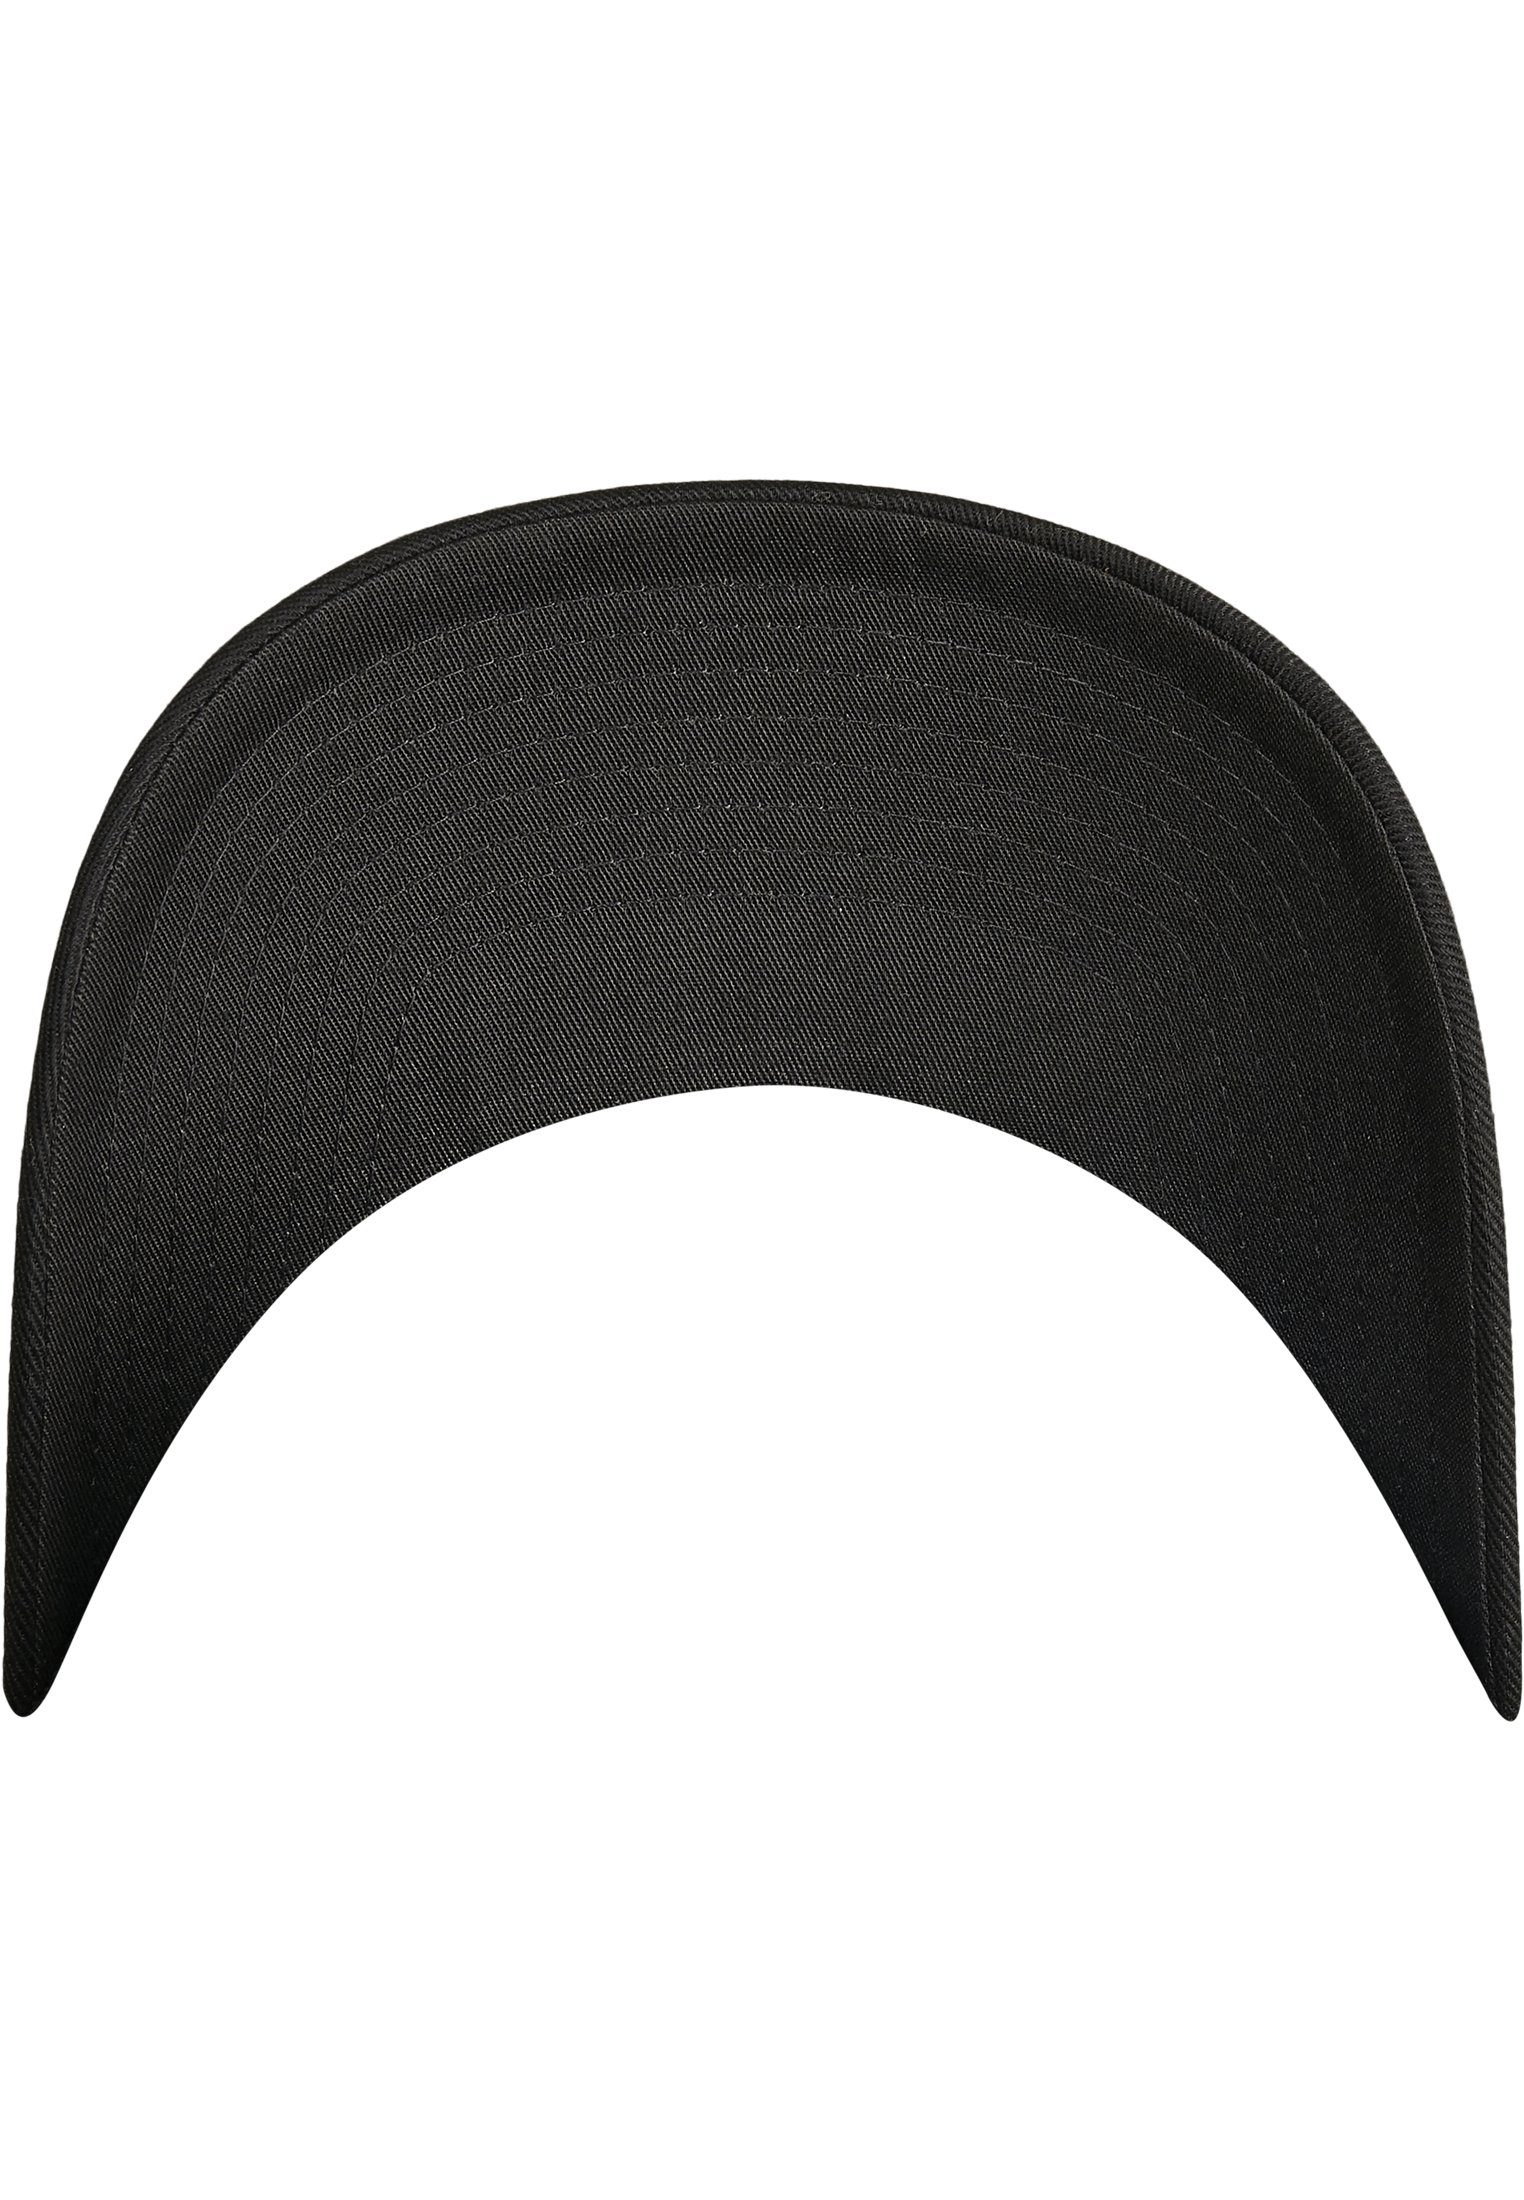 Flexfit Flex black/black Accessoires Flexfit Combed Cap Adjustable Wooly